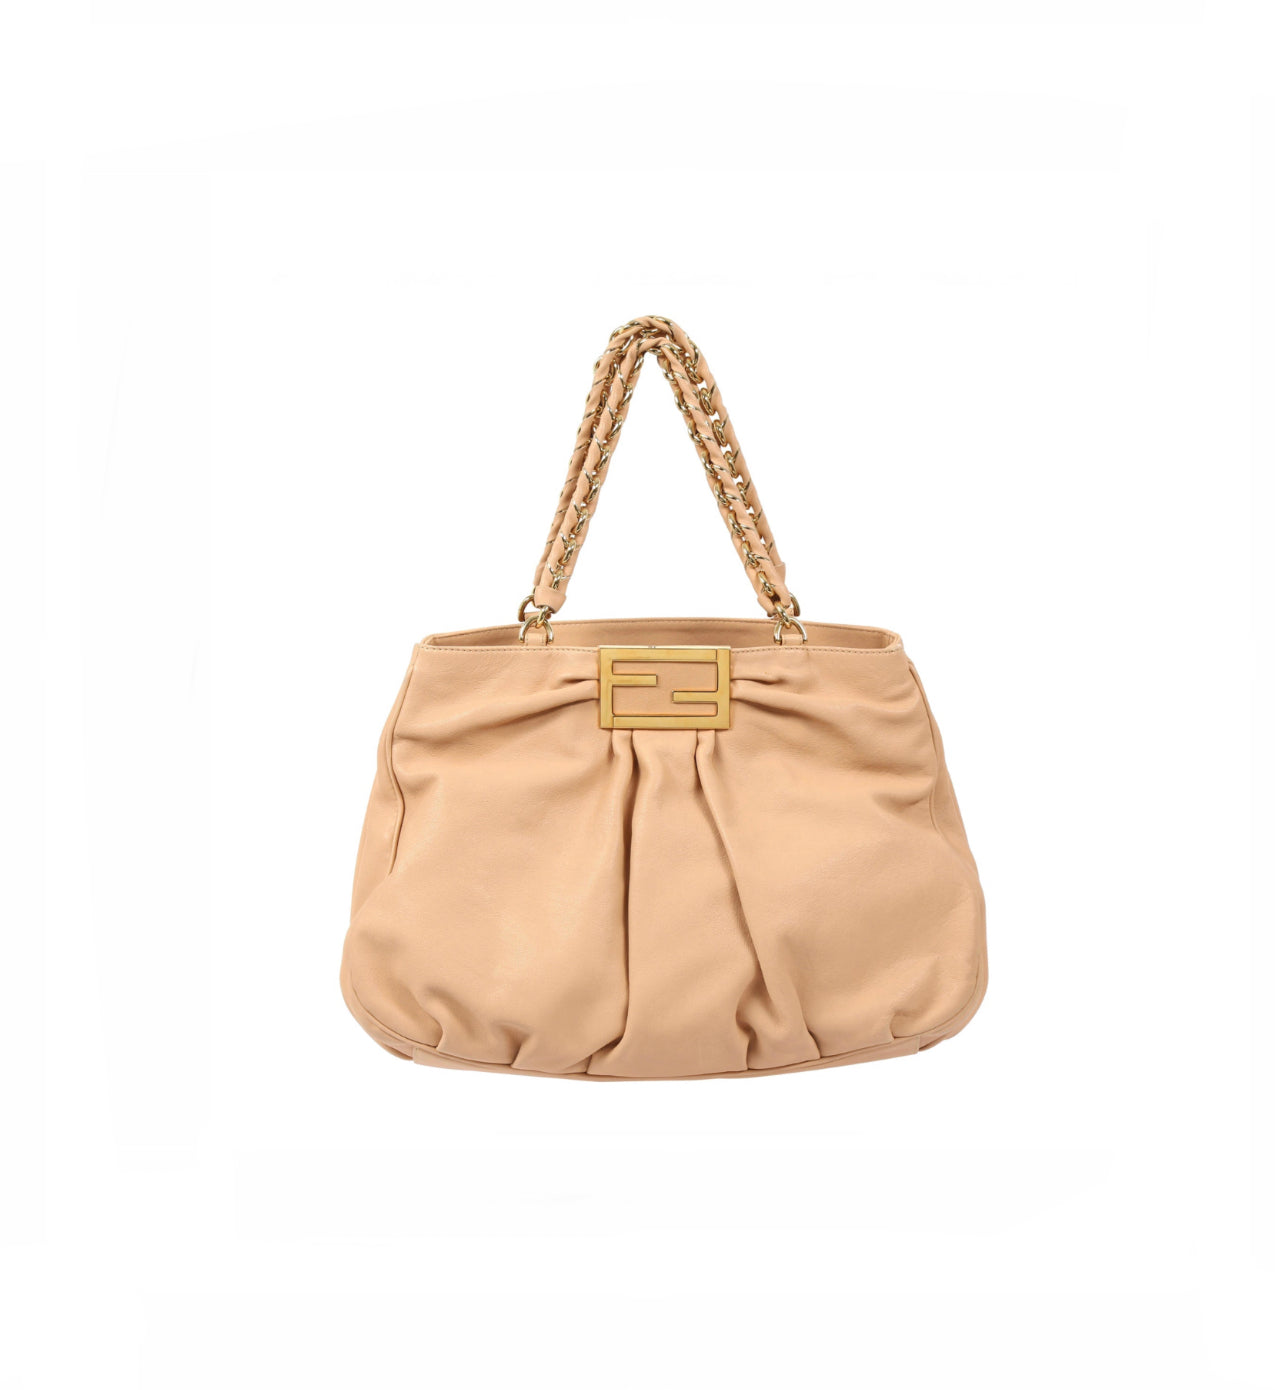 Fendi Mia Tote/Shoulder Bag